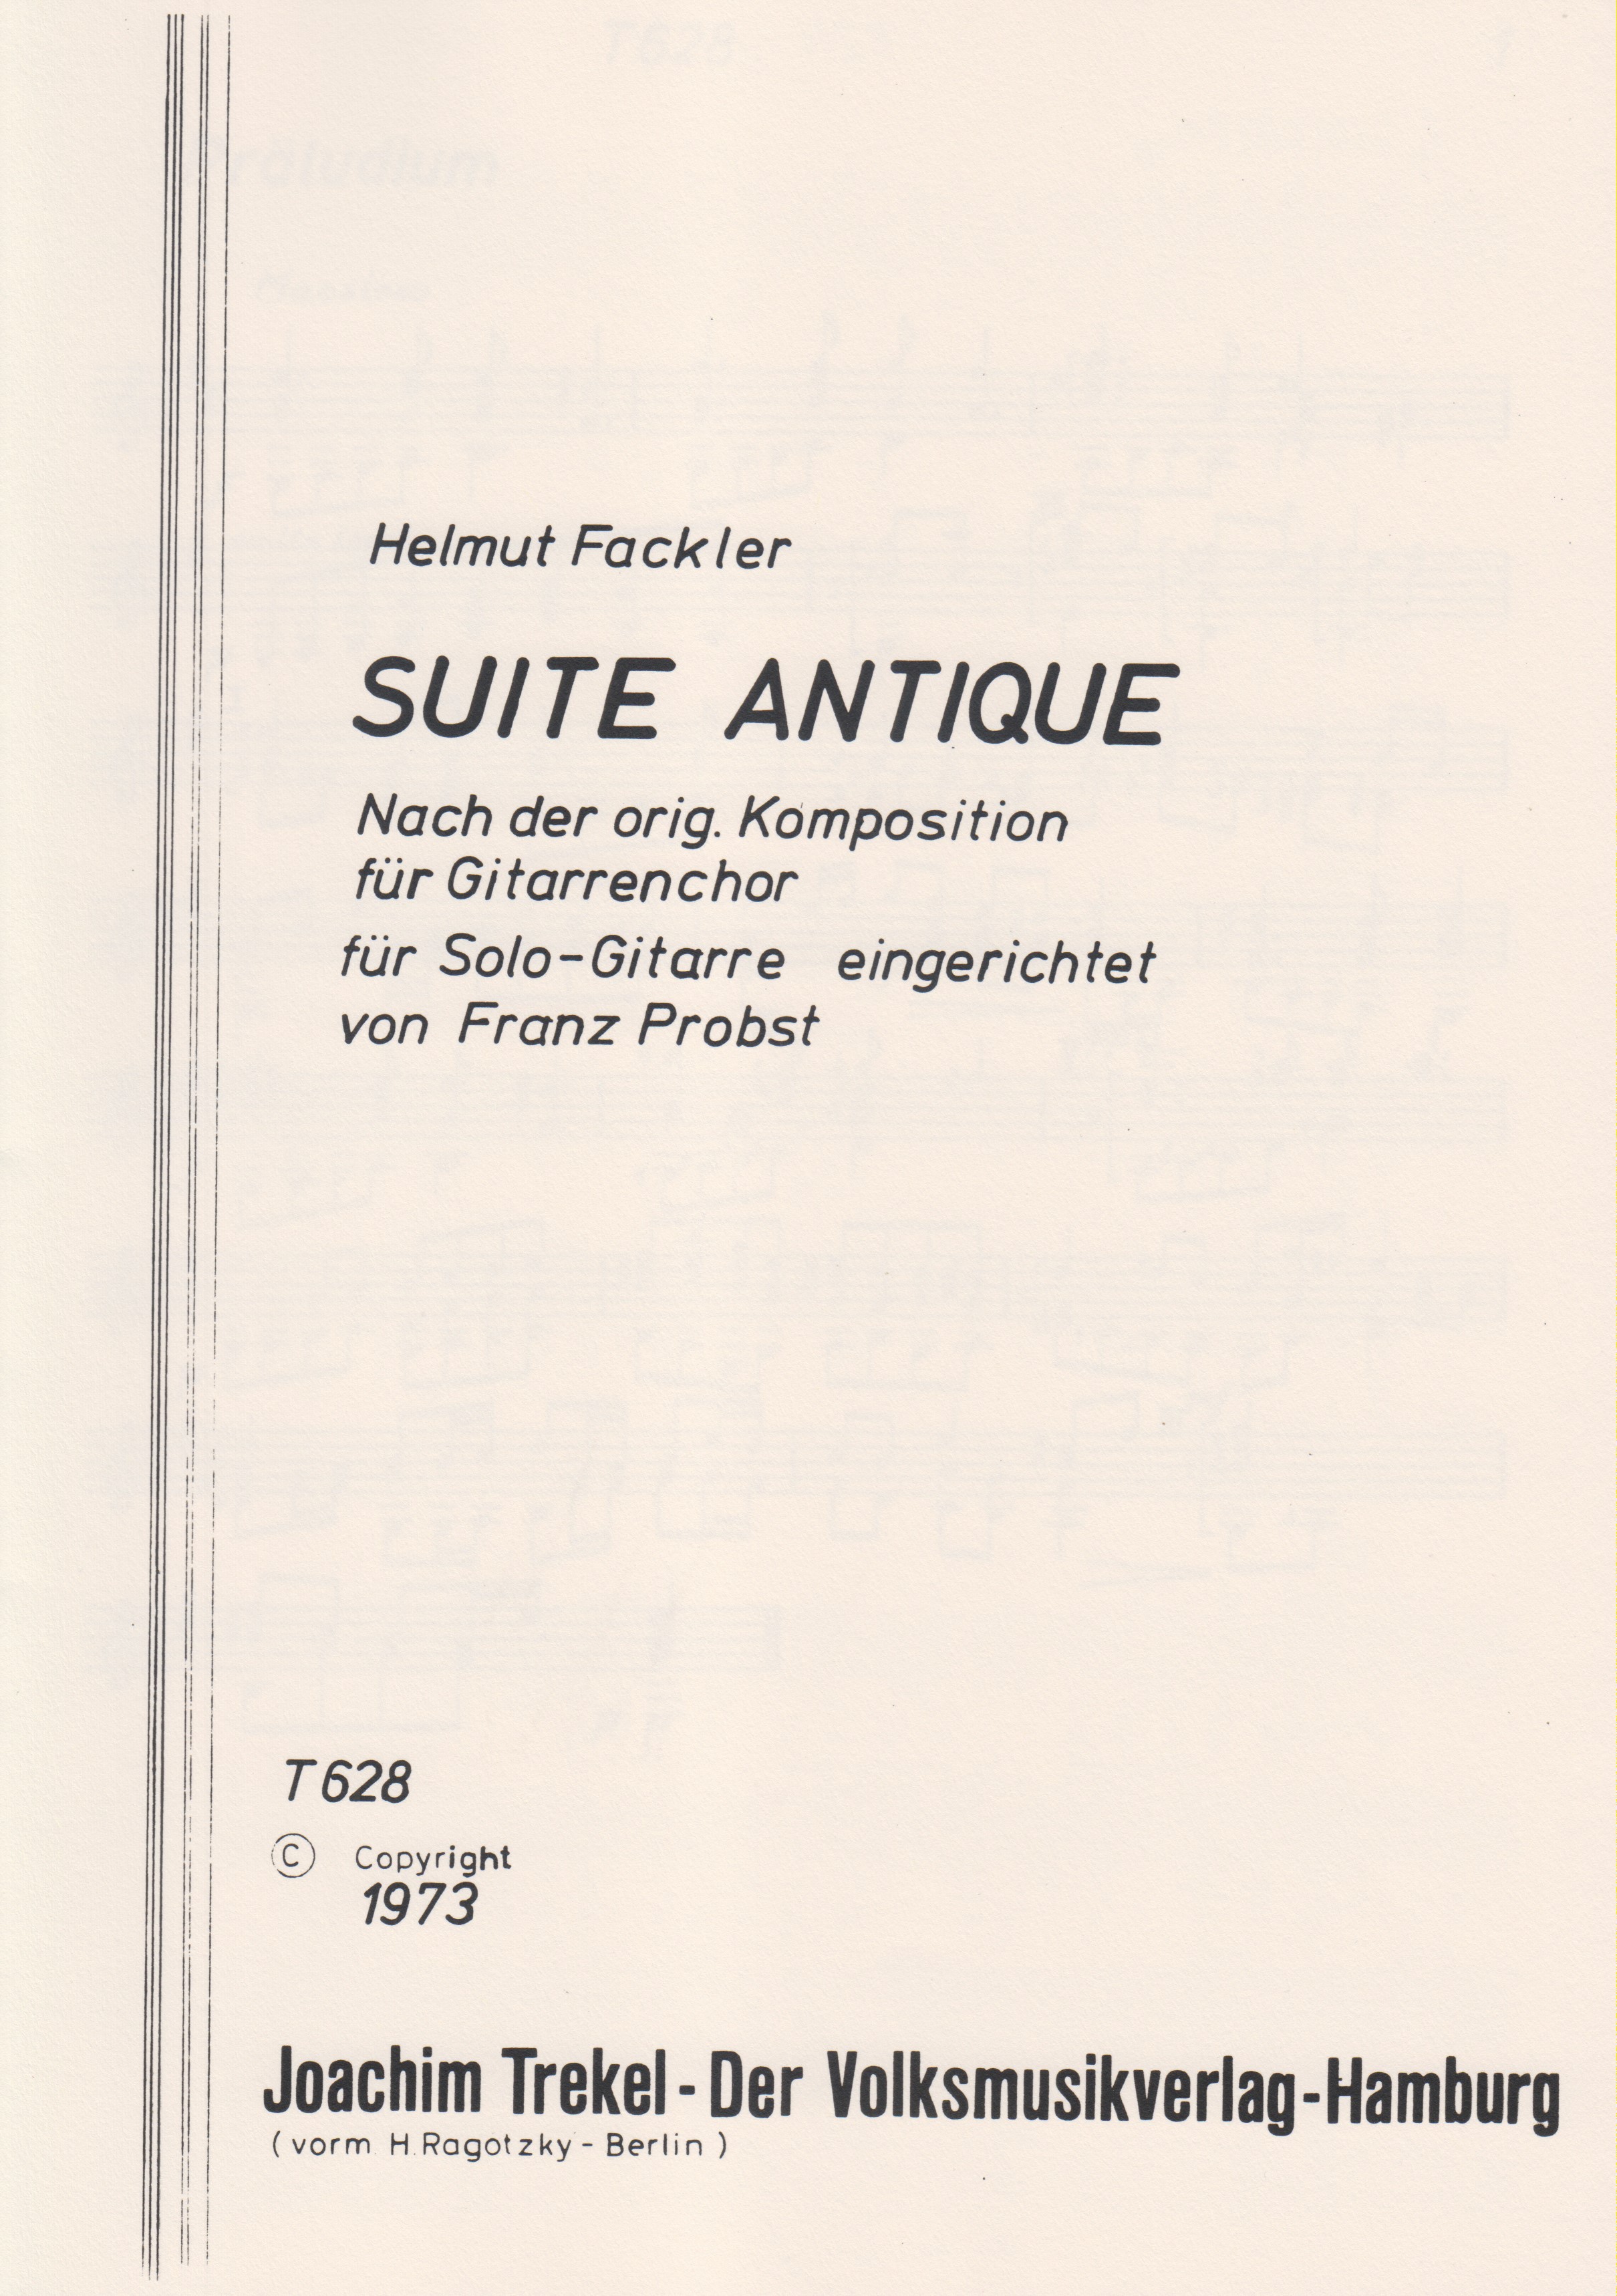 Suite Antique (e-Moll)